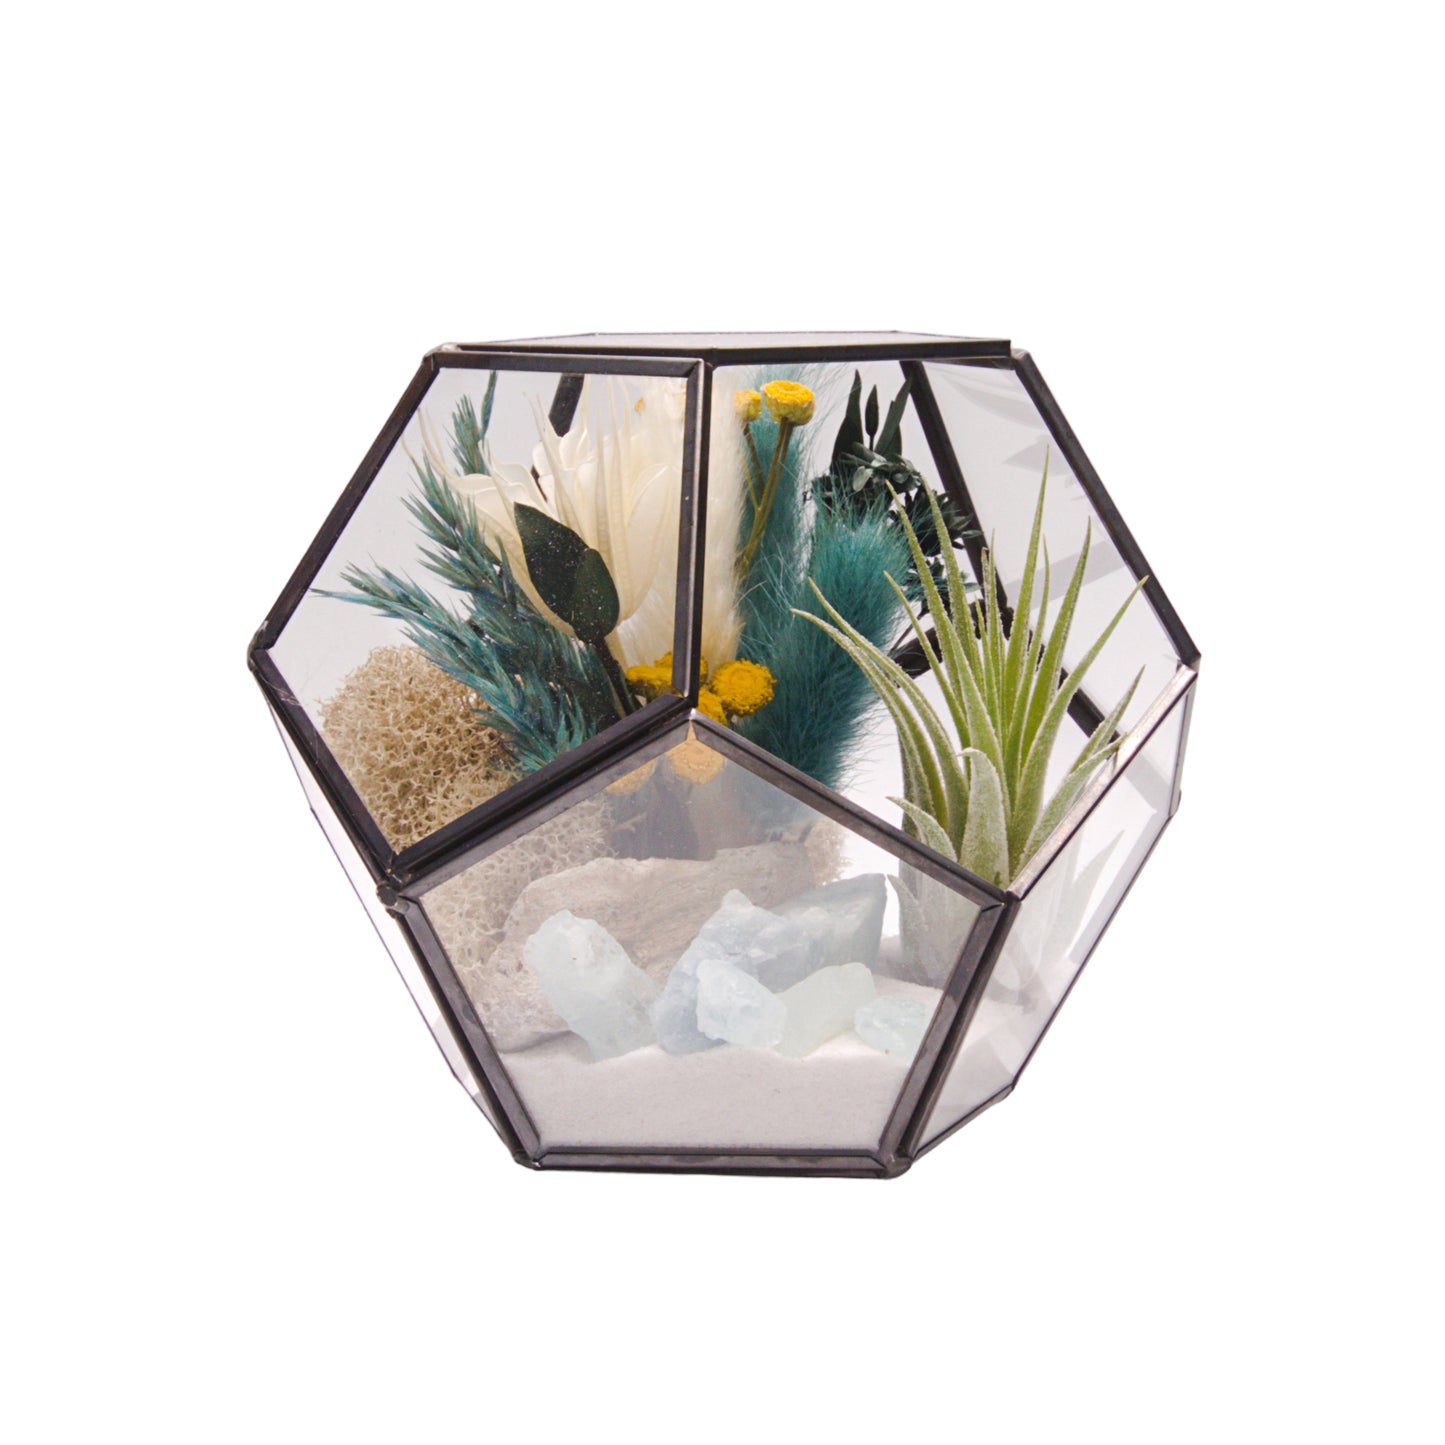 Victorian Bowl Airplant Terrarium - Aquamarine Crystals